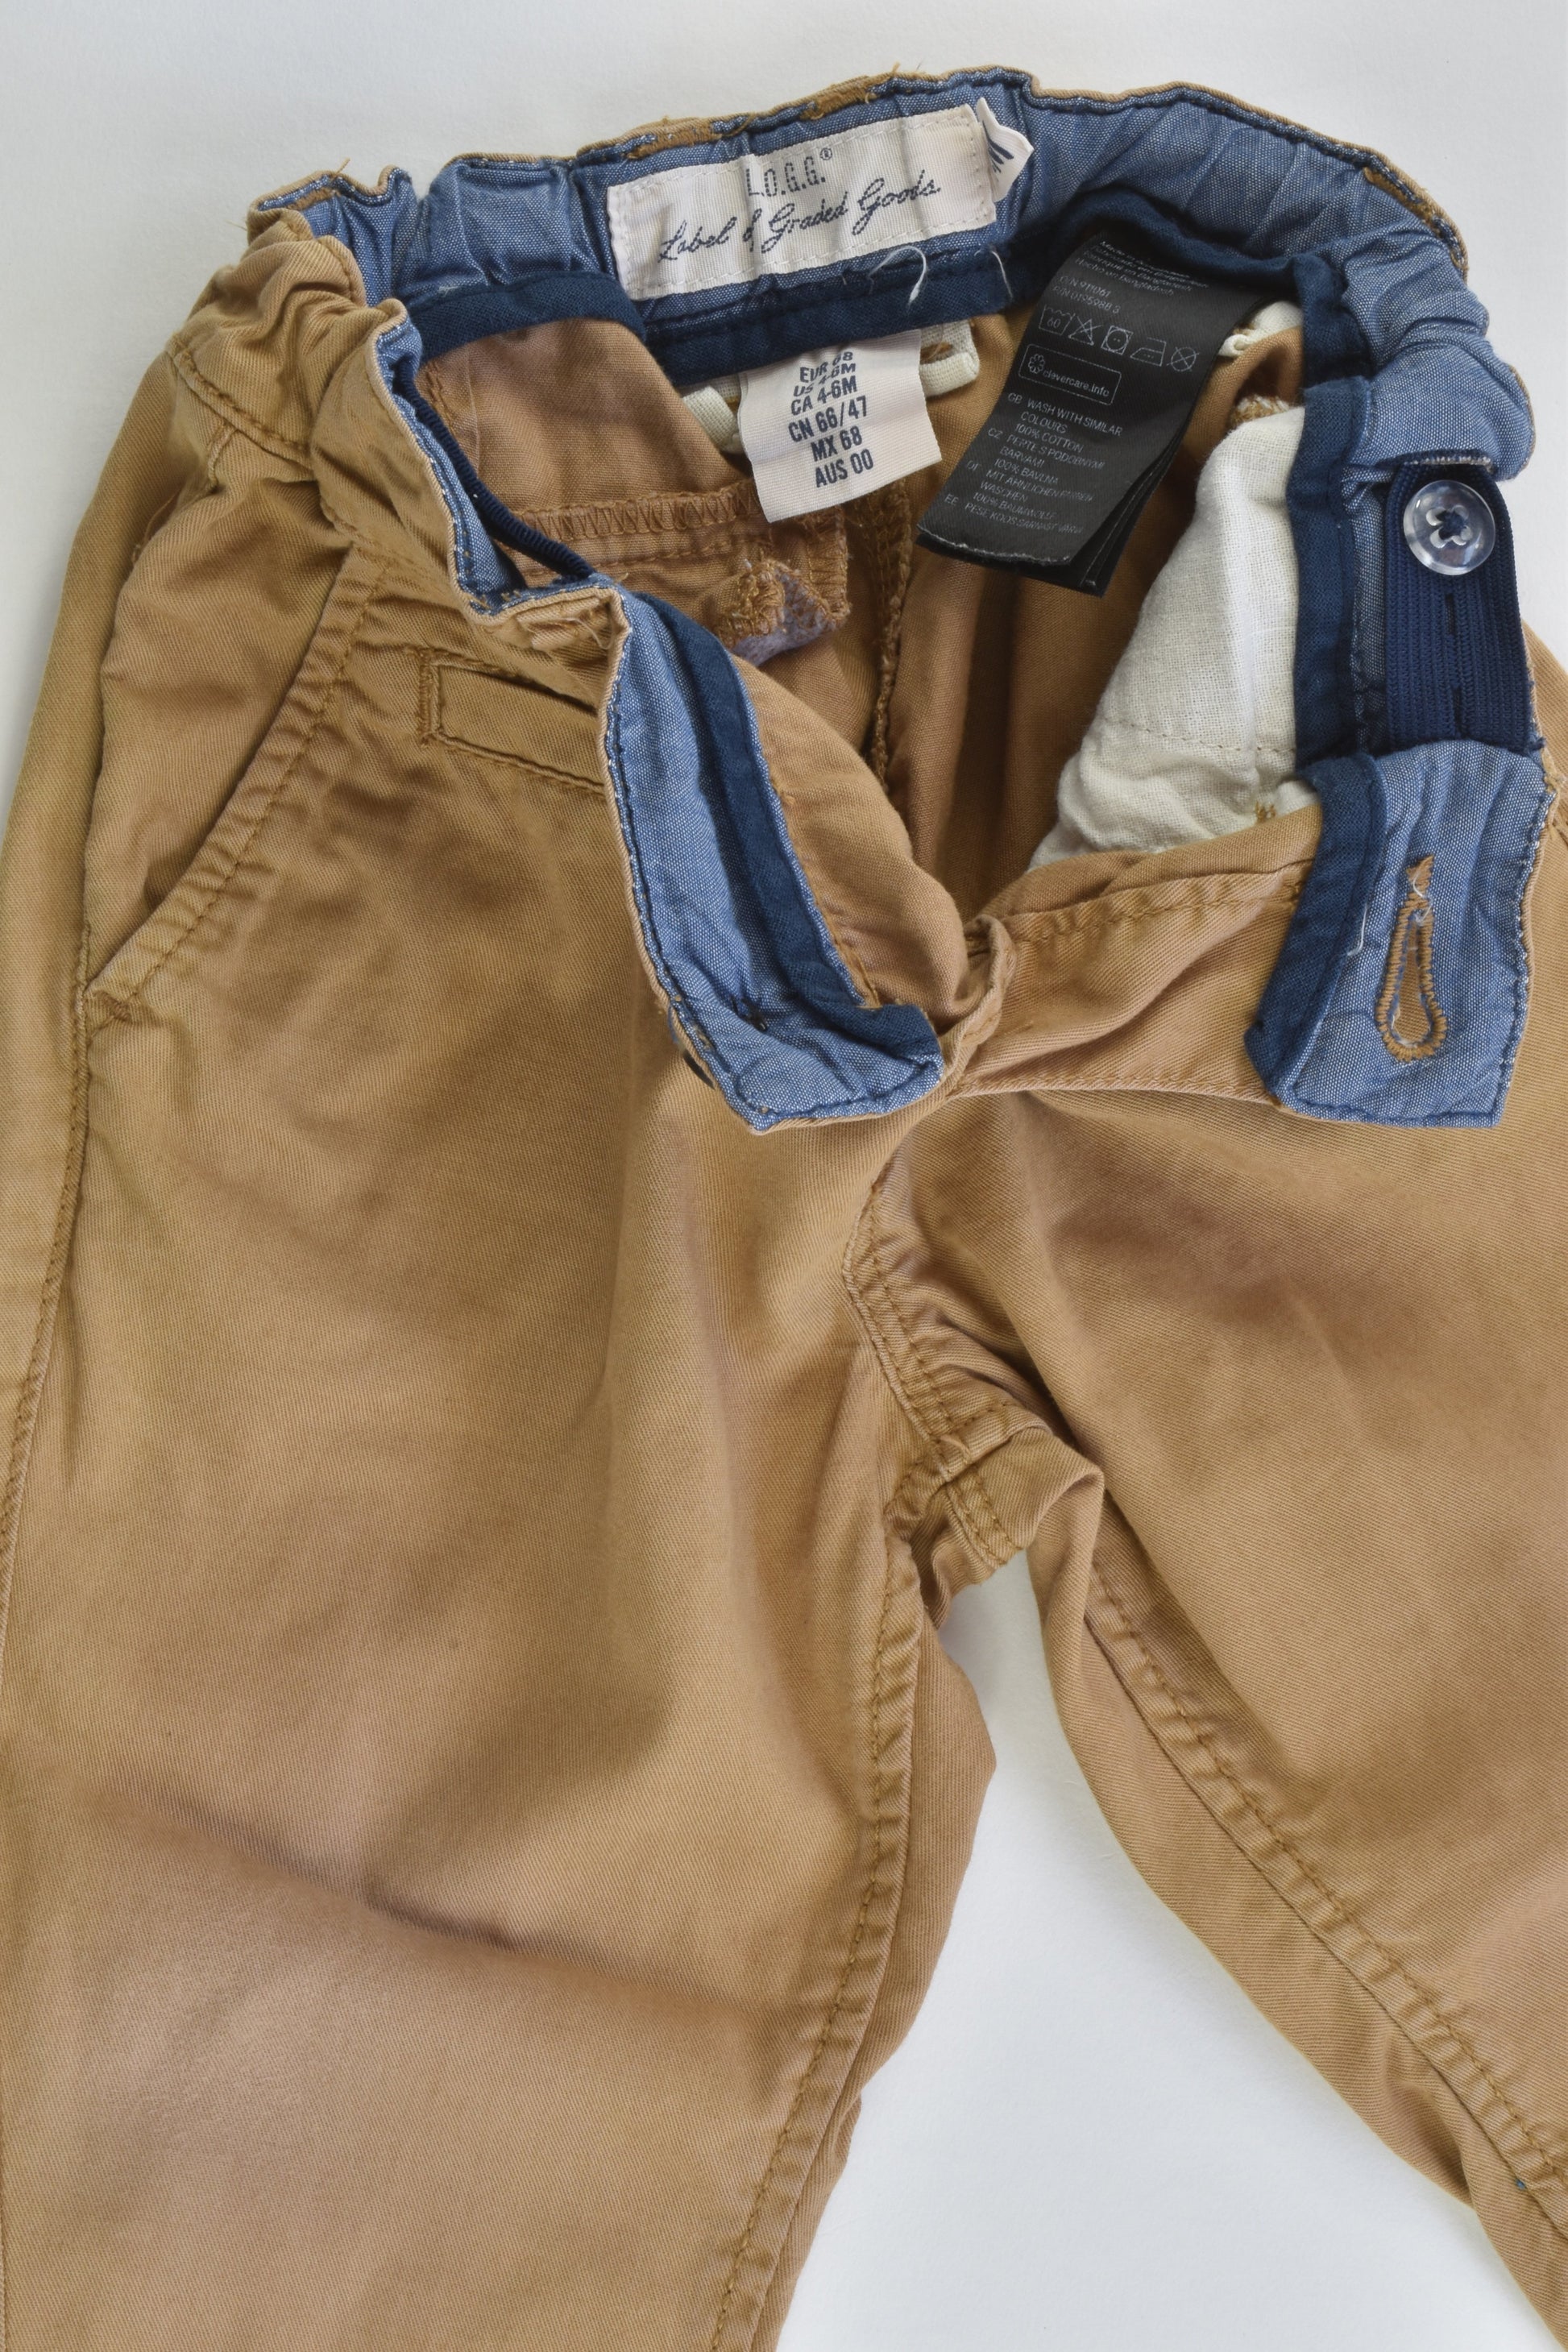 H&M Size 00 (68 cm) Pants